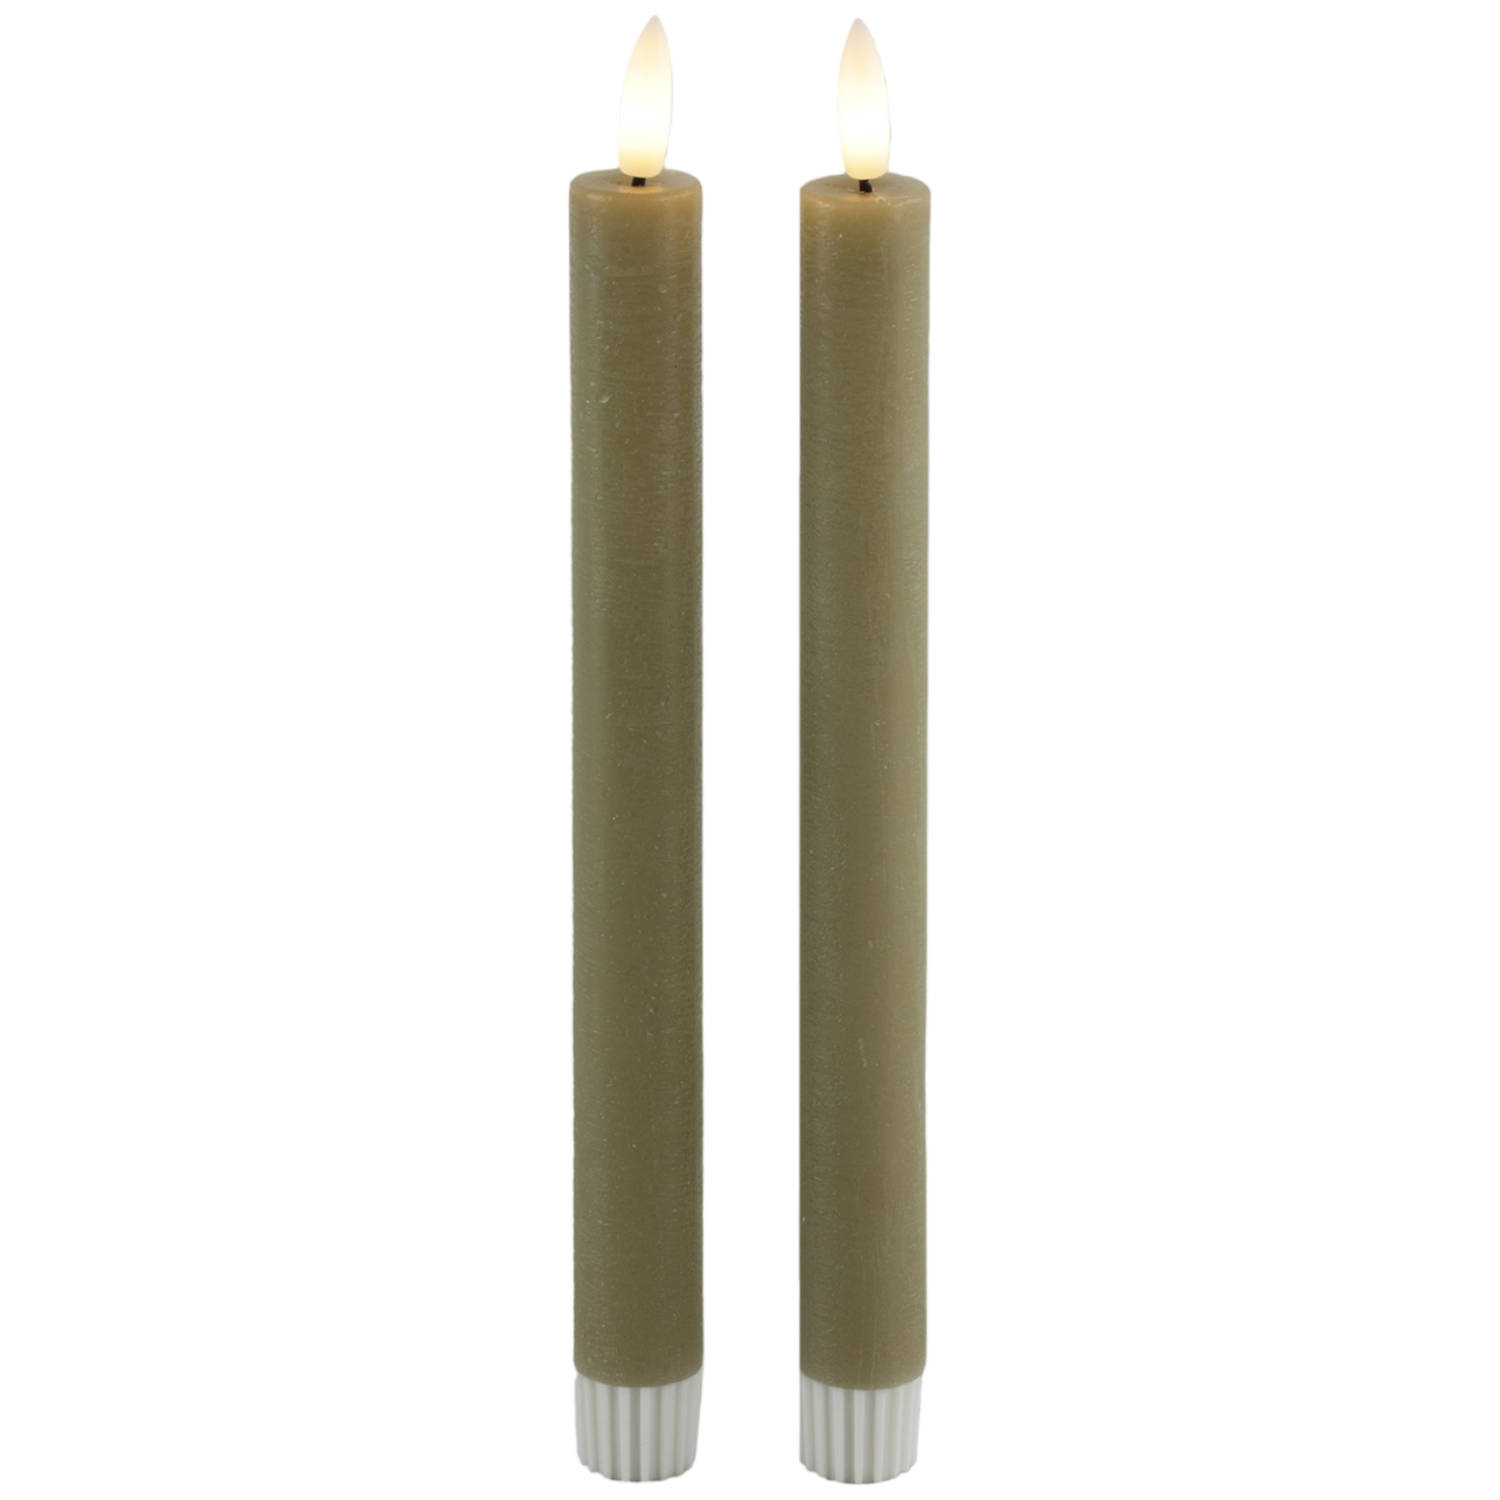 Kaarsen - Led - Wax - Decoratie - Countryfield - LED kaarsen 2x - taupe - met Afstandsbediening - Dinerkaars - rustiek - wax - 24 cm - LED kaars batterij